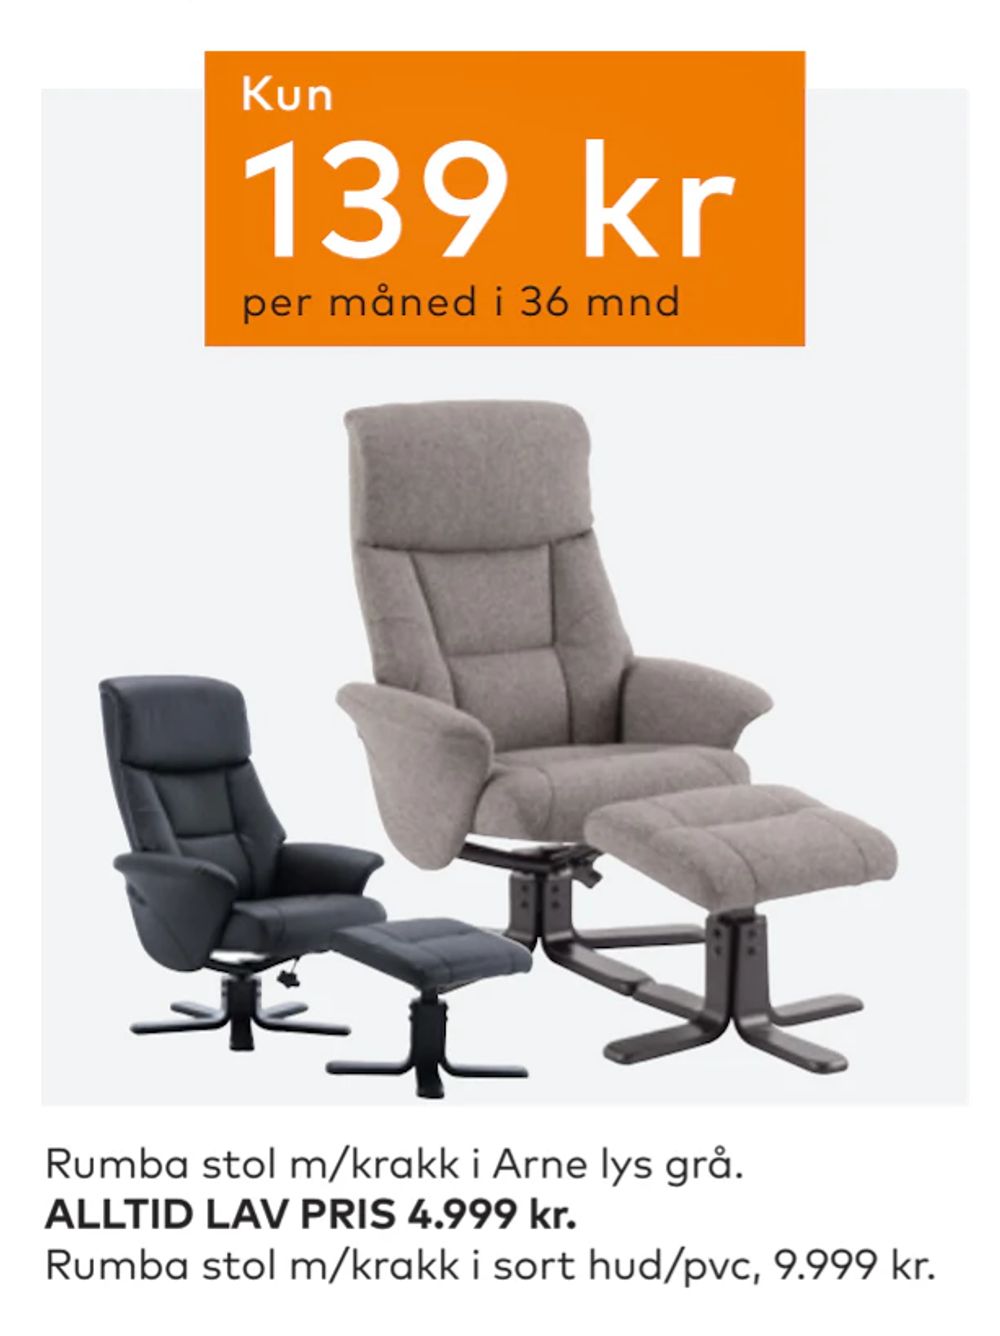 Tilbud på Rumba stol m/krakk fra Skeidar til 4 999 kr